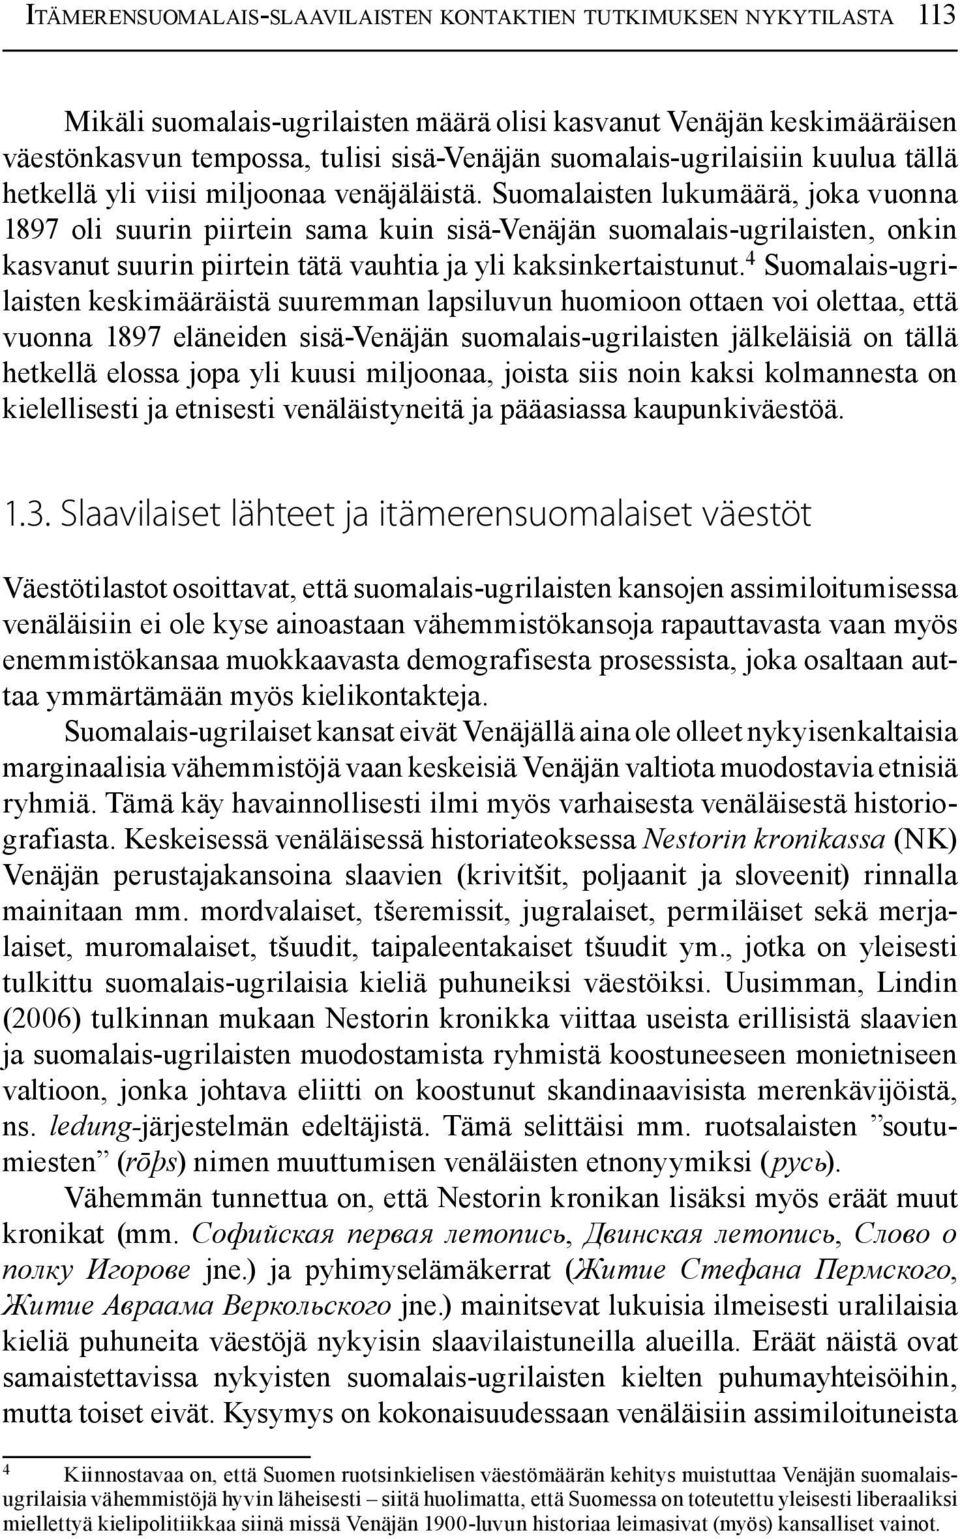 Suomalaisten lukumäärä, joka vuonna 1897 oli suurin piirtein sama kuin sisä-venäjän suomalais-ugrilaisten, onkin kasvanut suurin piirtein tätä vauhtia ja yli kaksinkertaistunut.